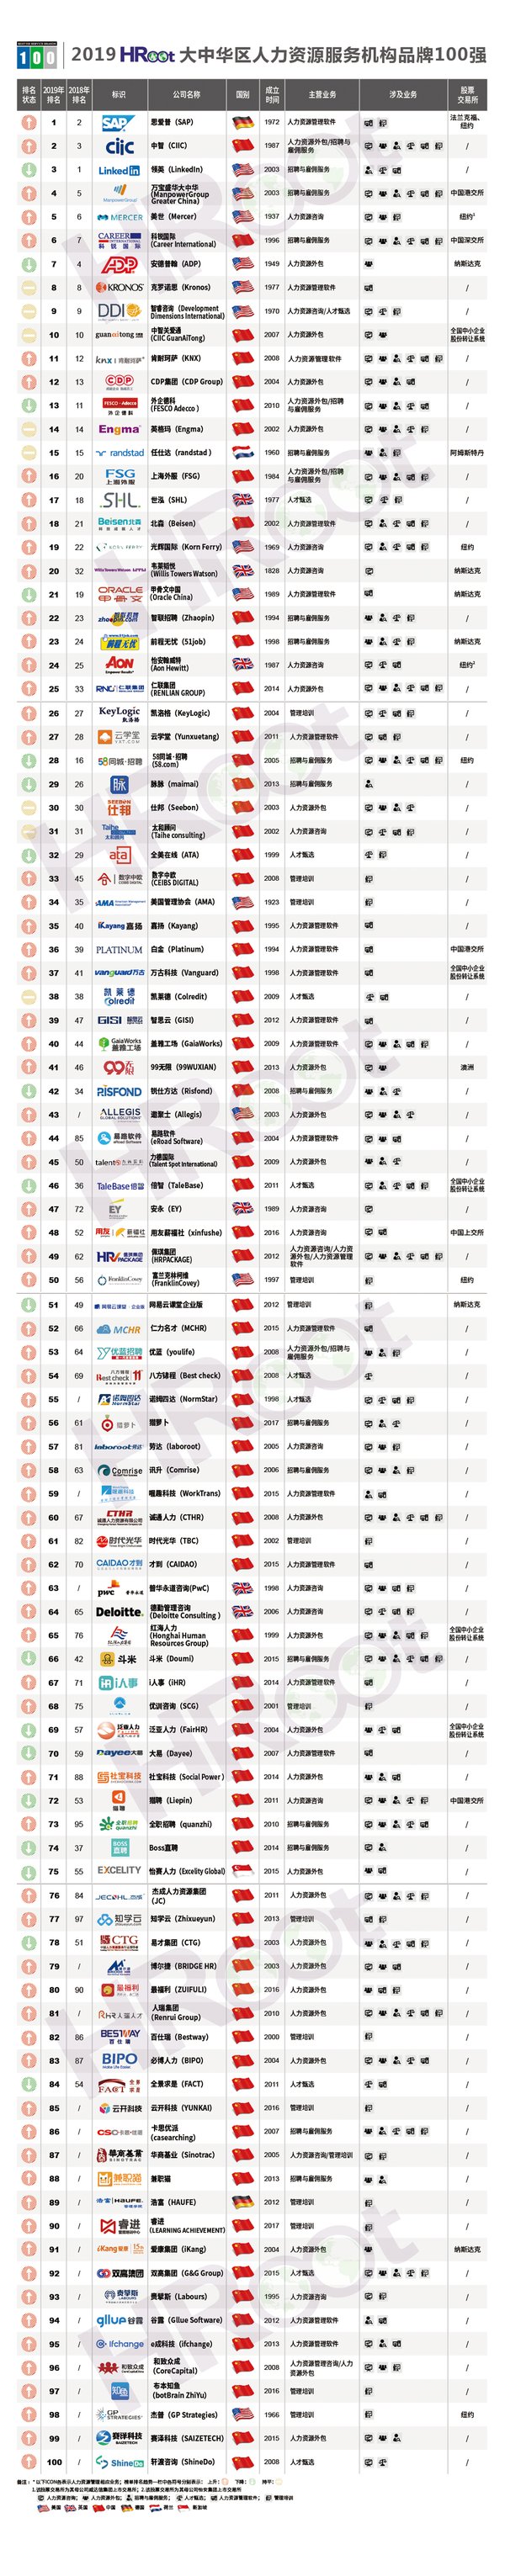 2019大中华区人力资源服务机构品牌100强榜单发布 | 美通社